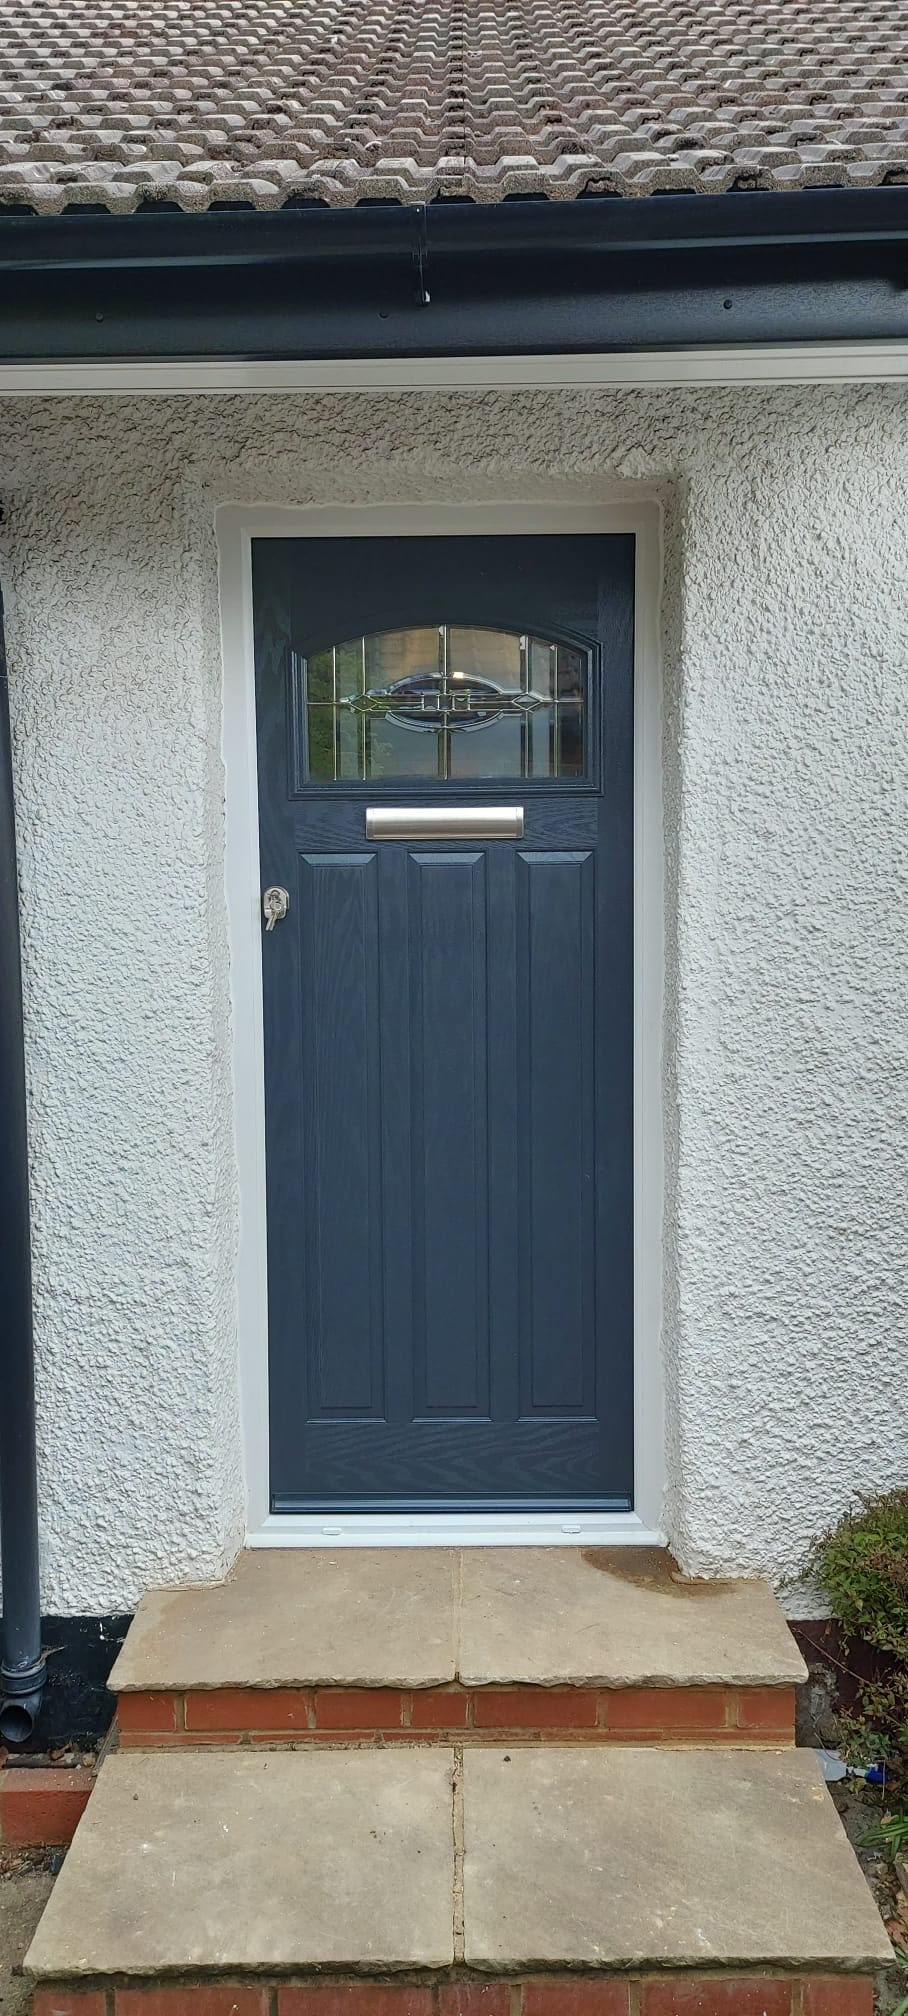 Blue composite door